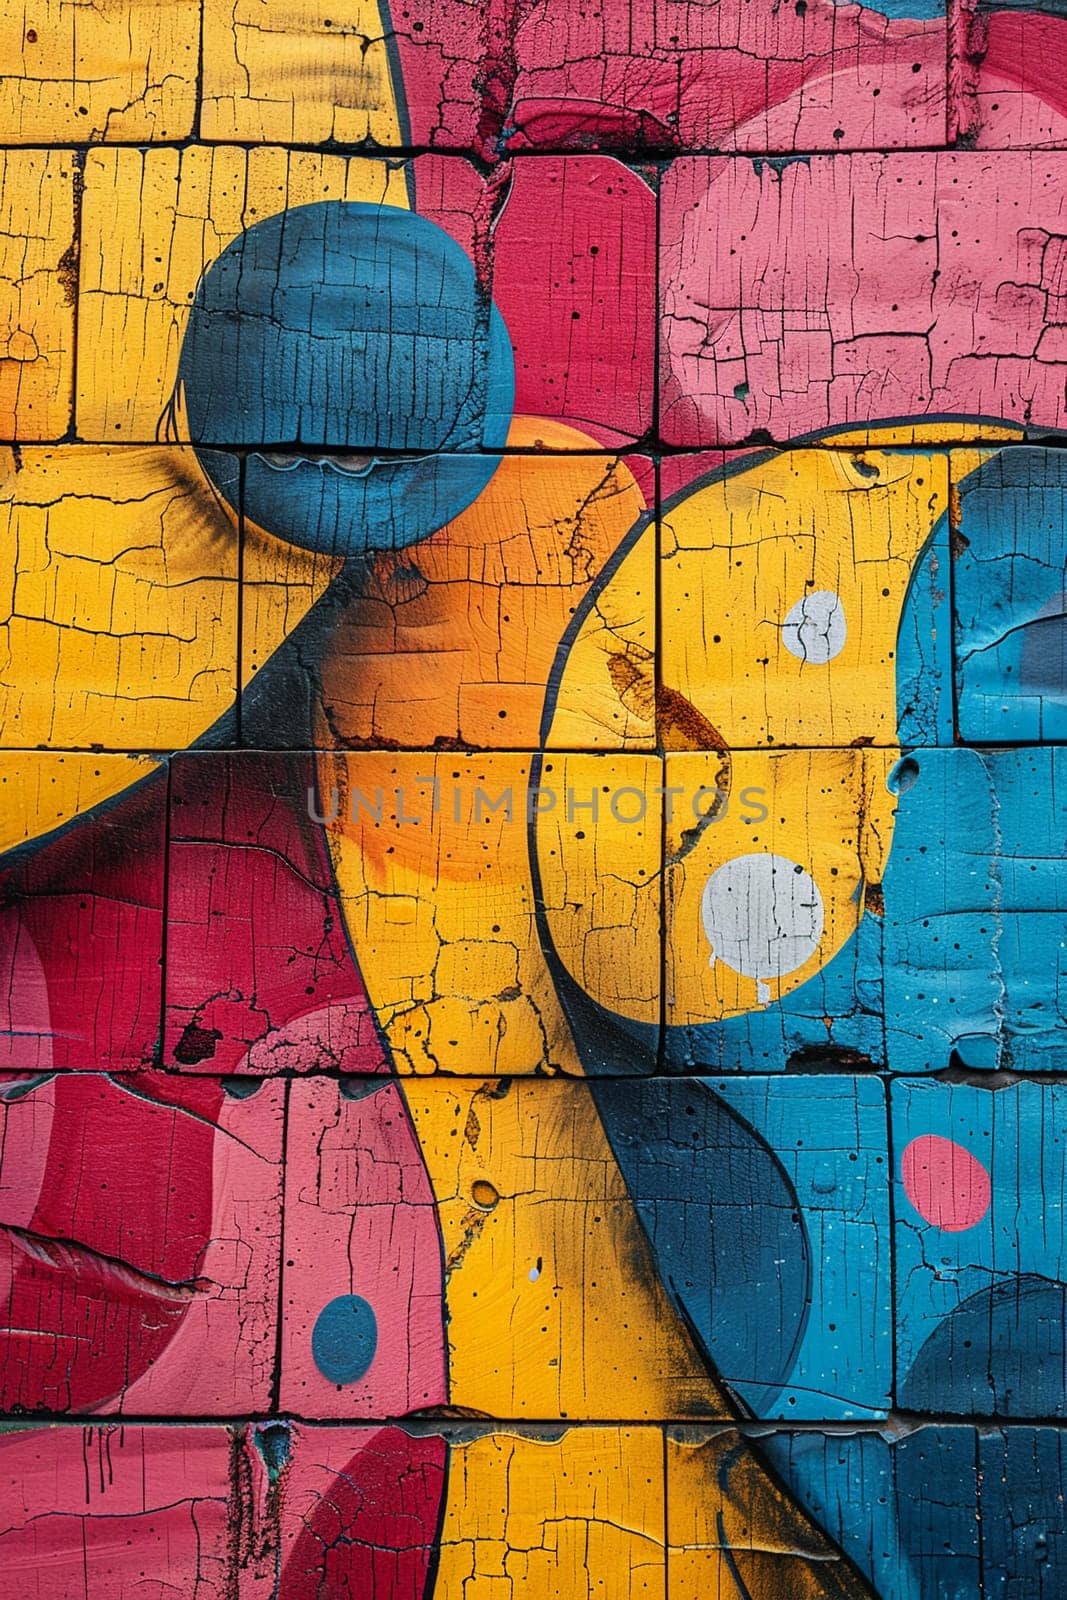 Vibrant graffiti wall in urban setting by Benzoix